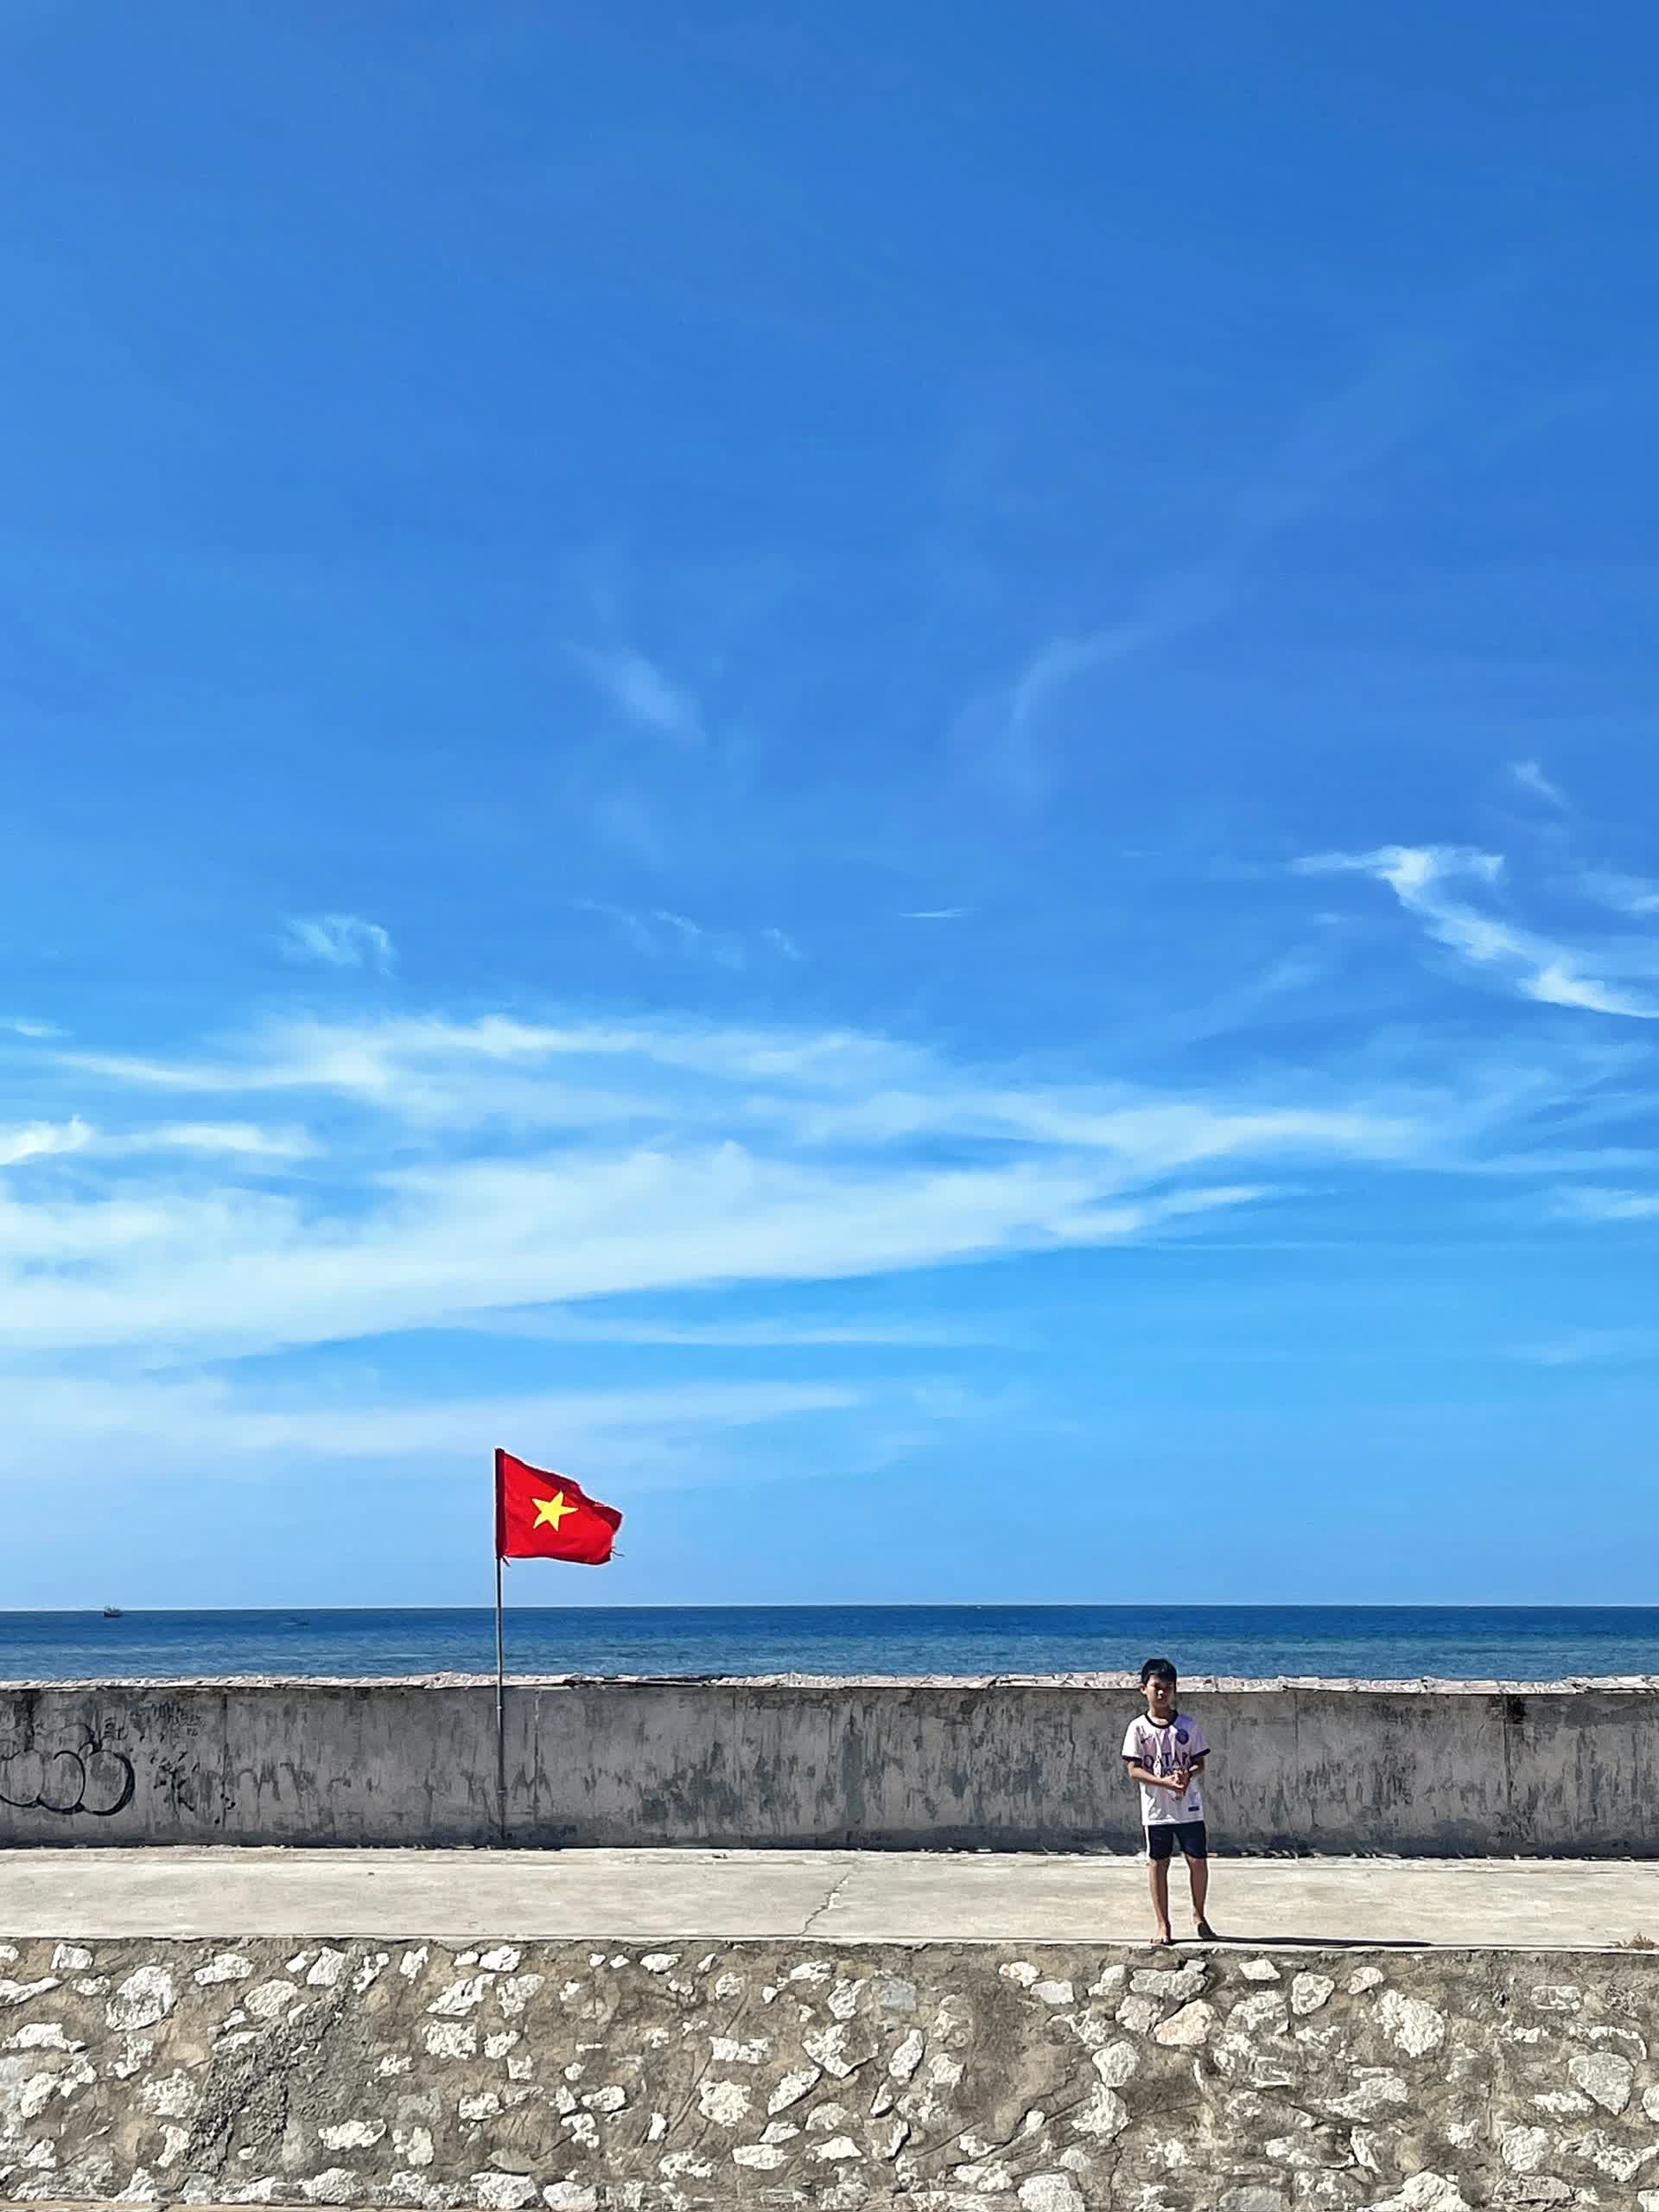 Đảo Phú Quý bắt đầu vào mùa biển xanh nắng vàng, chỉ cần đứng vào là có ảnh đẹp- Ảnh 6.